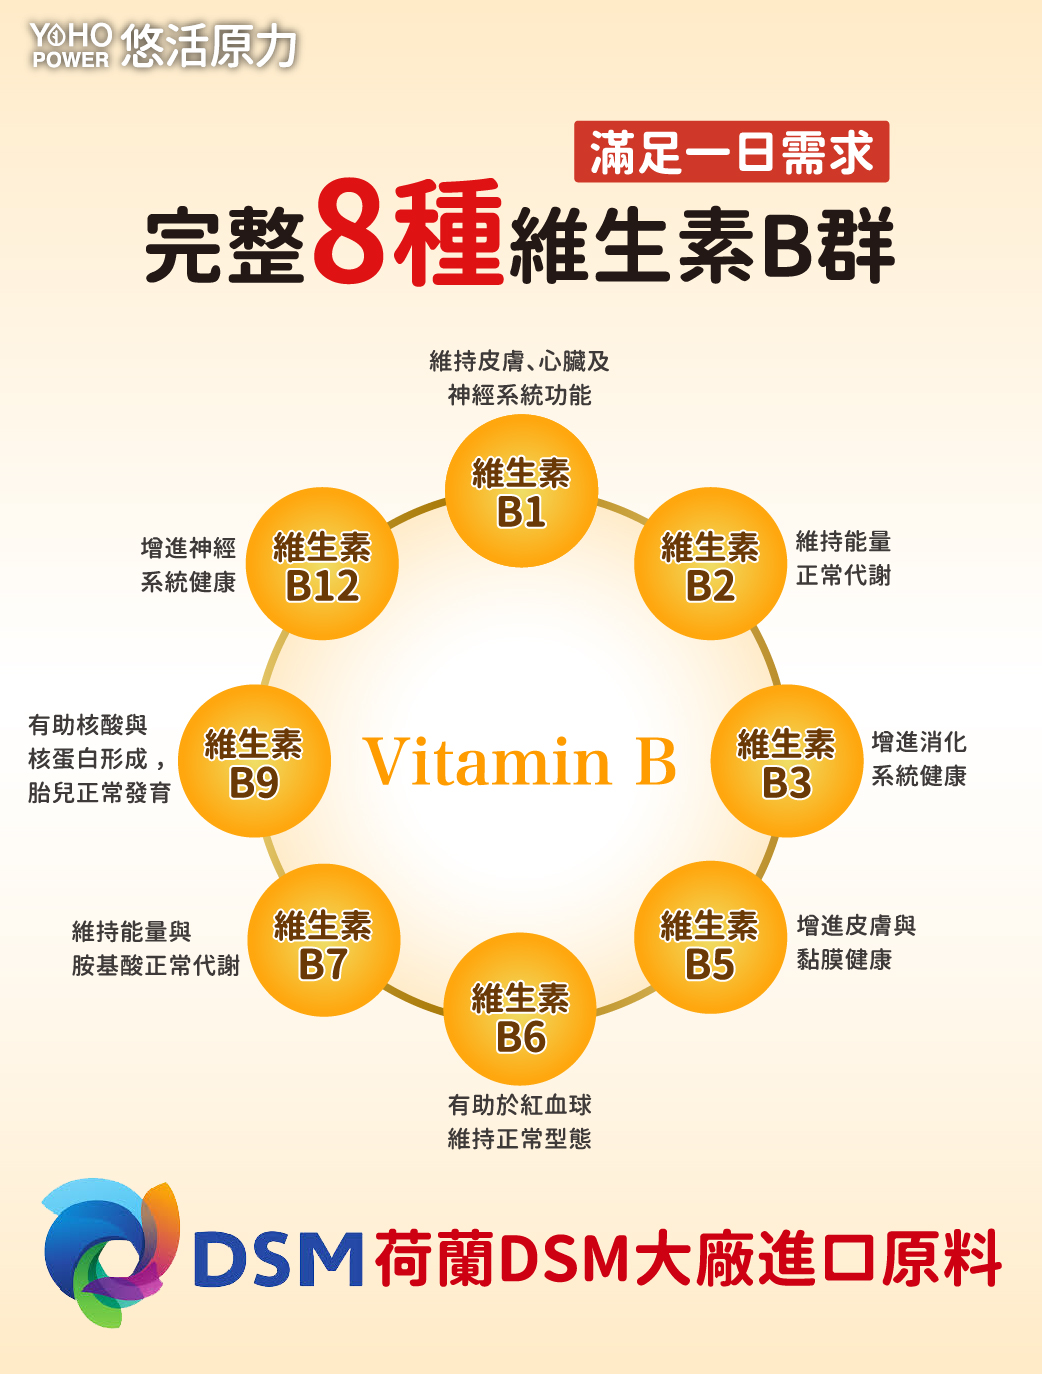 【悠活原力】原力綜合維生素B群(60顆/盒) 緩釋膜衣錠 高單位8種綜合B群